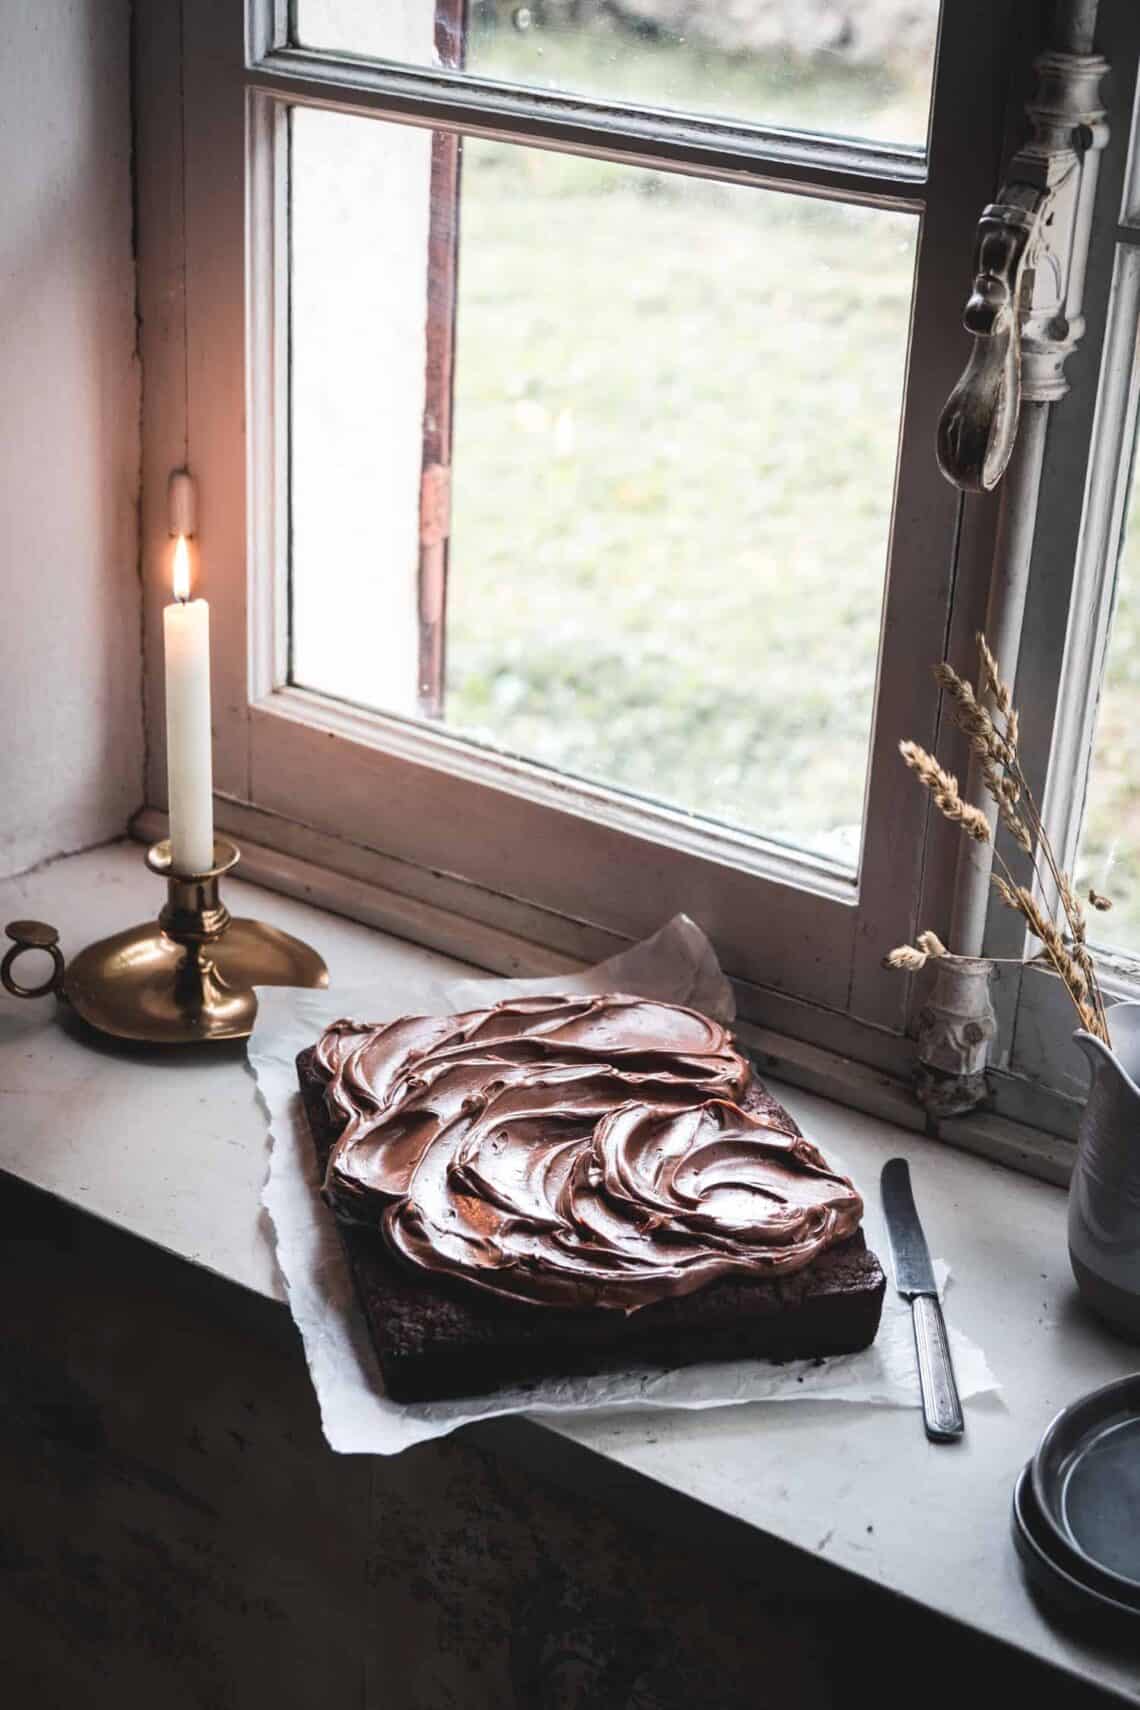 Le parfait gâteau au chocolat express avec une touche de café, photographié sur le bord d'une fenêtre avec une mise en scène hivernale